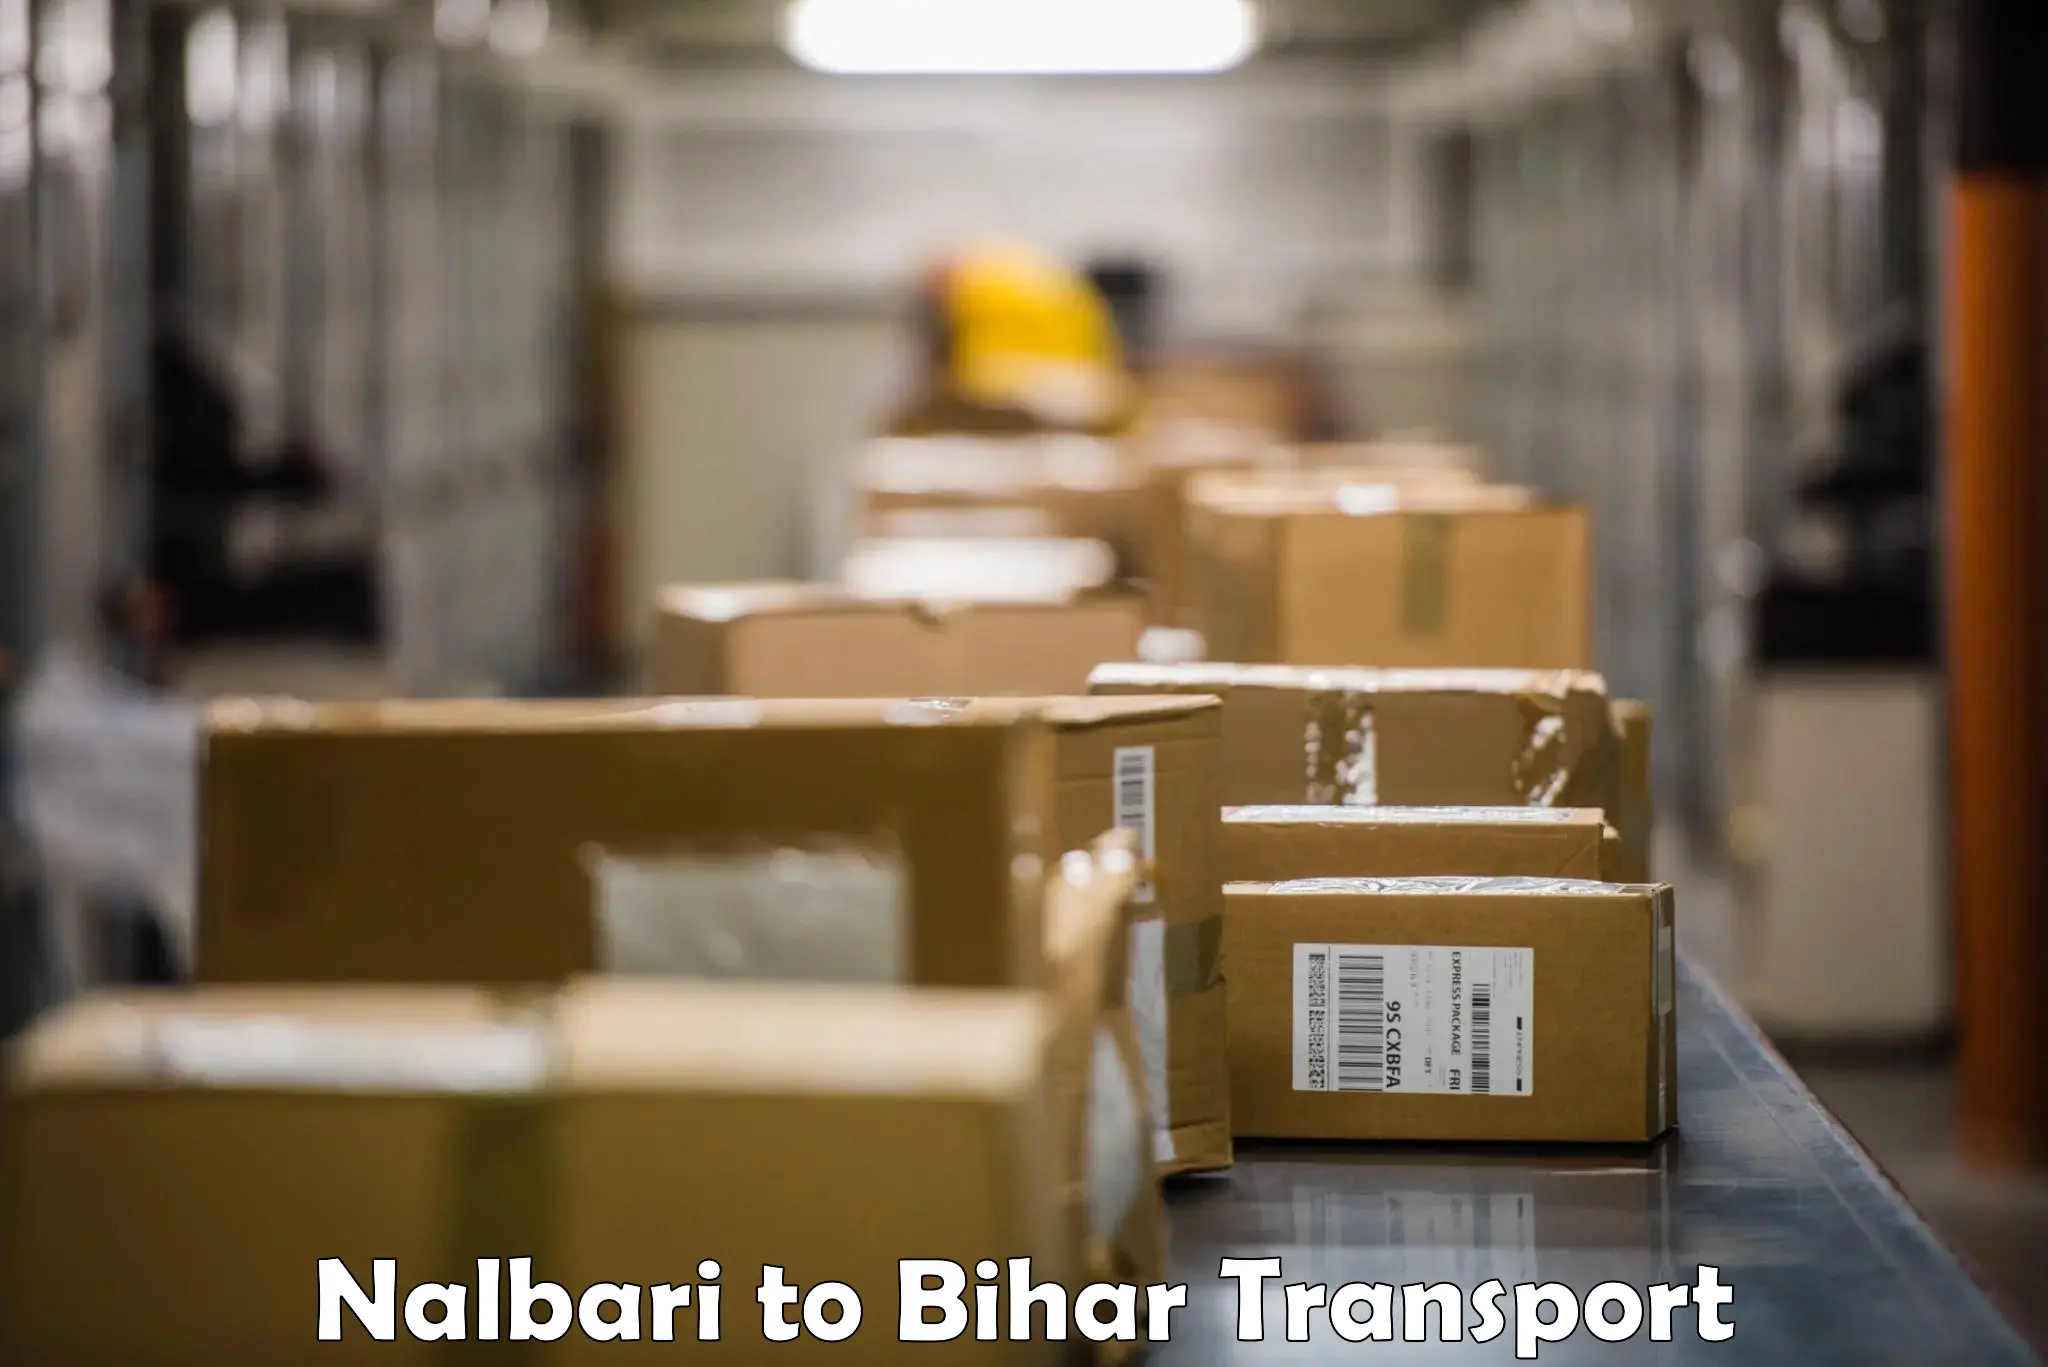 Vehicle transport services Nalbari to Kharagpur Munger